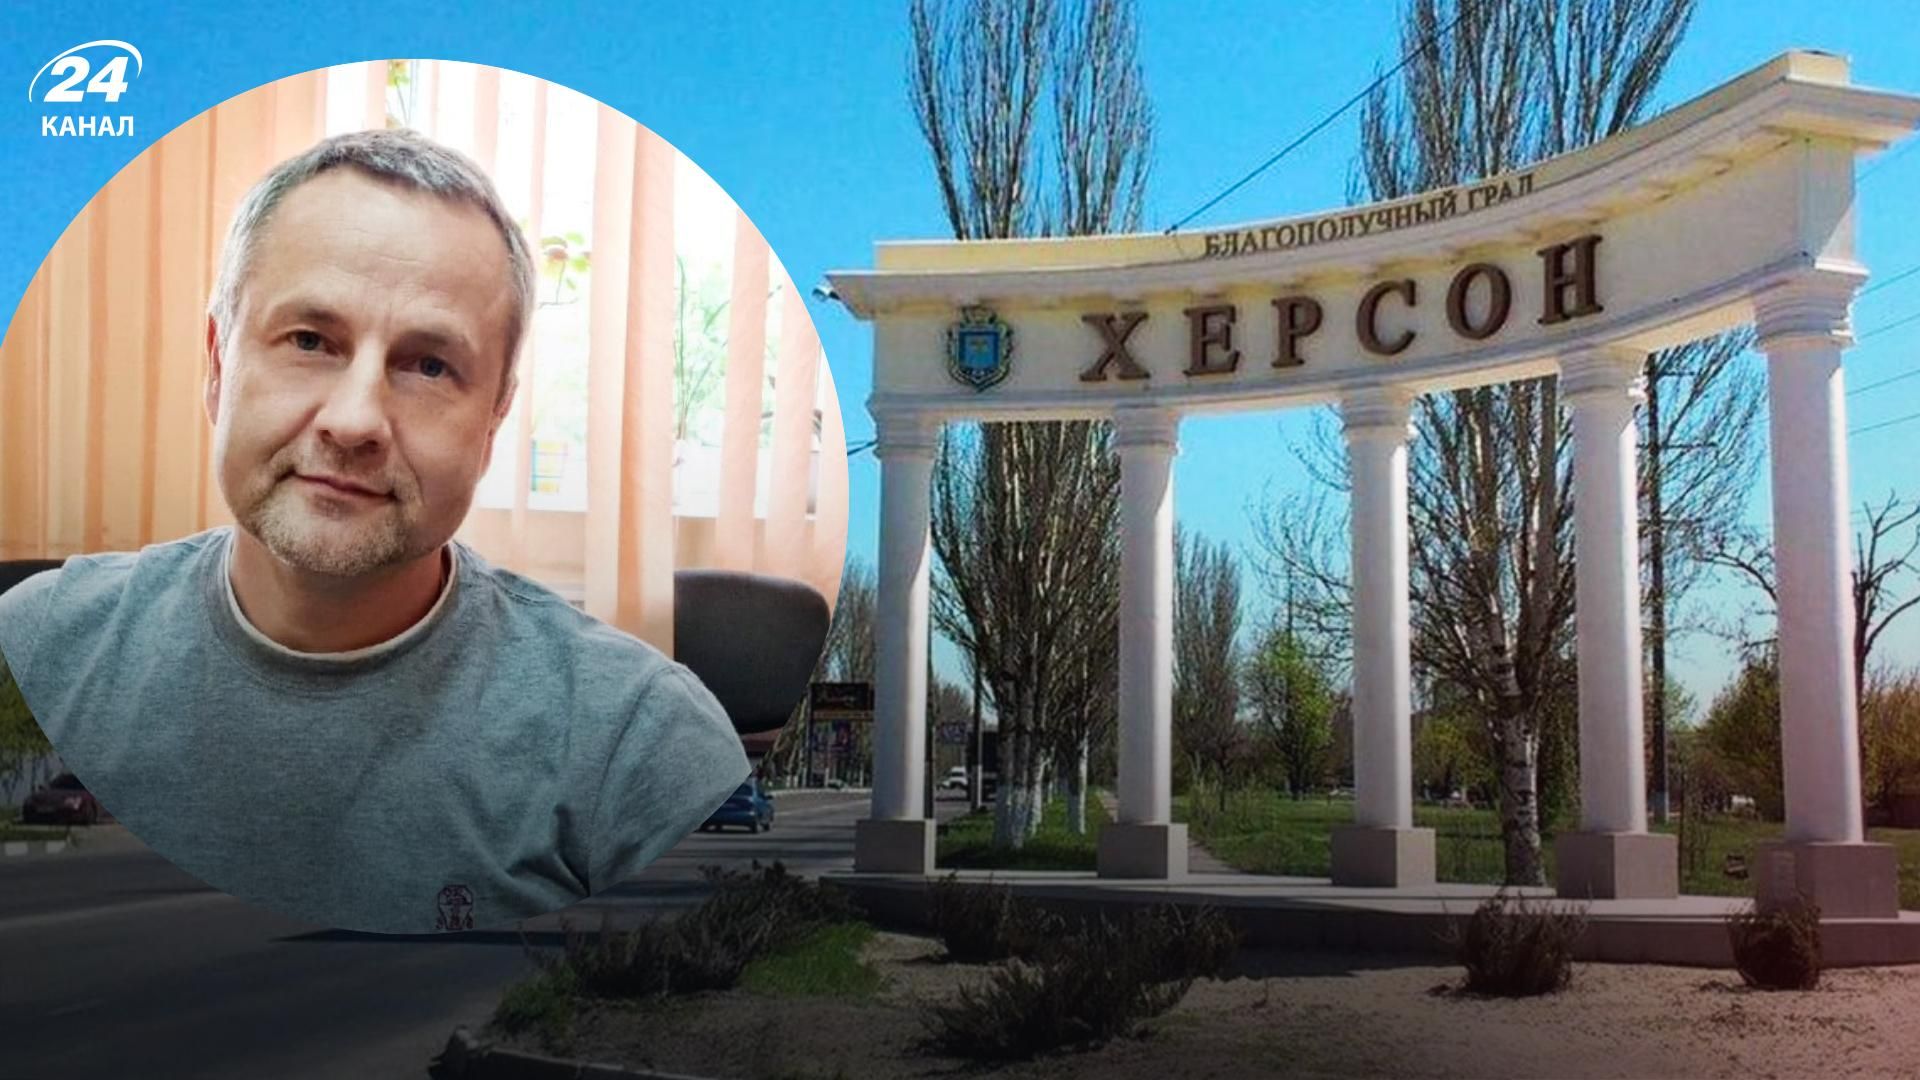 Ни украинской мобильной связи, ни работы, – мэр Херсона рассказал о ситуации в городе